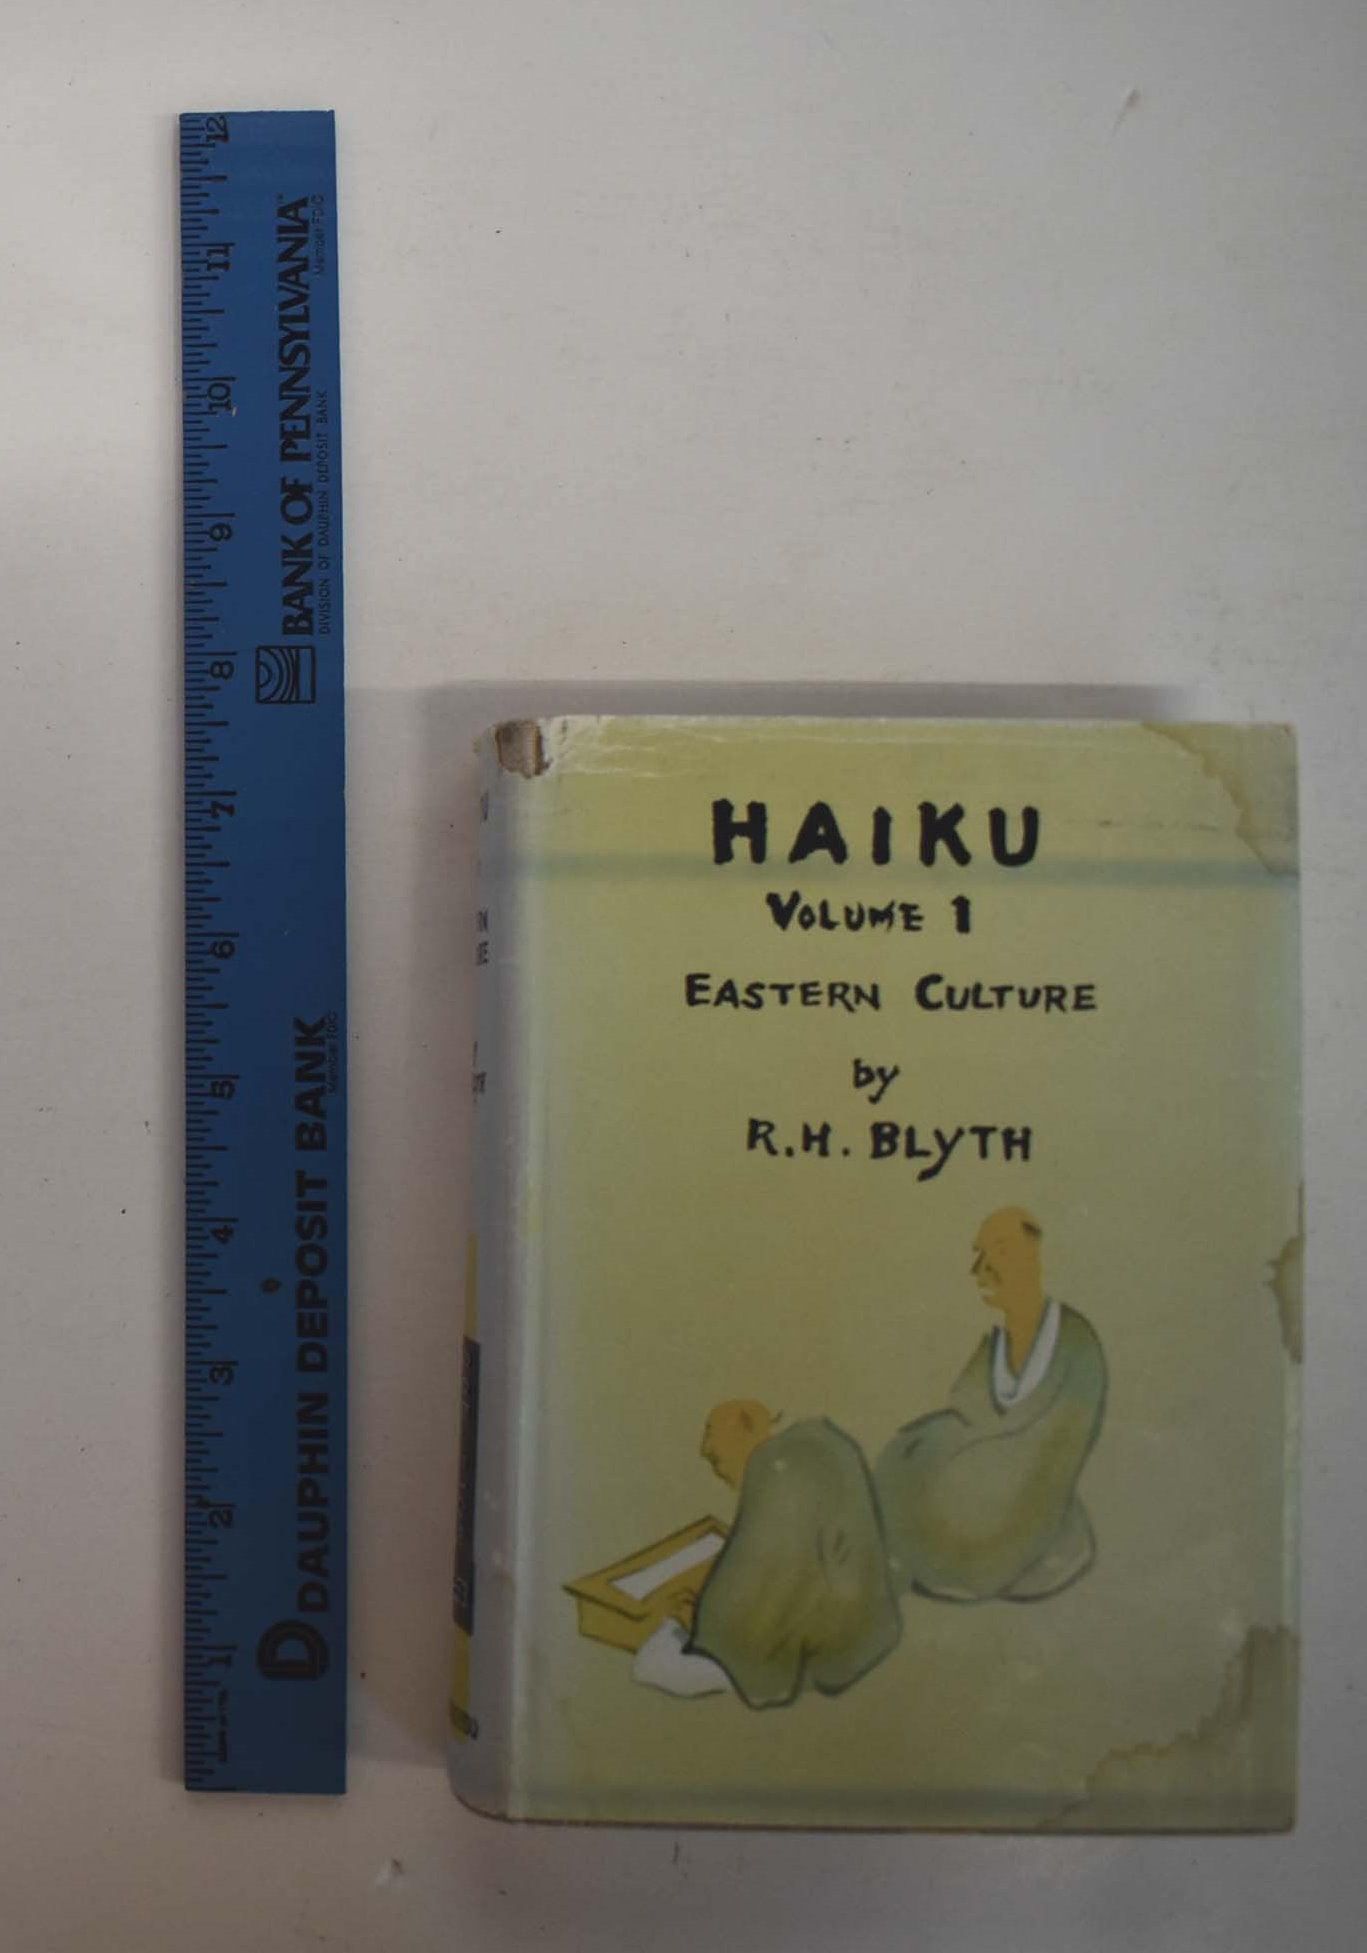 Rebirths: A Volume of Personal Haiku (A Haiku Trilogy)